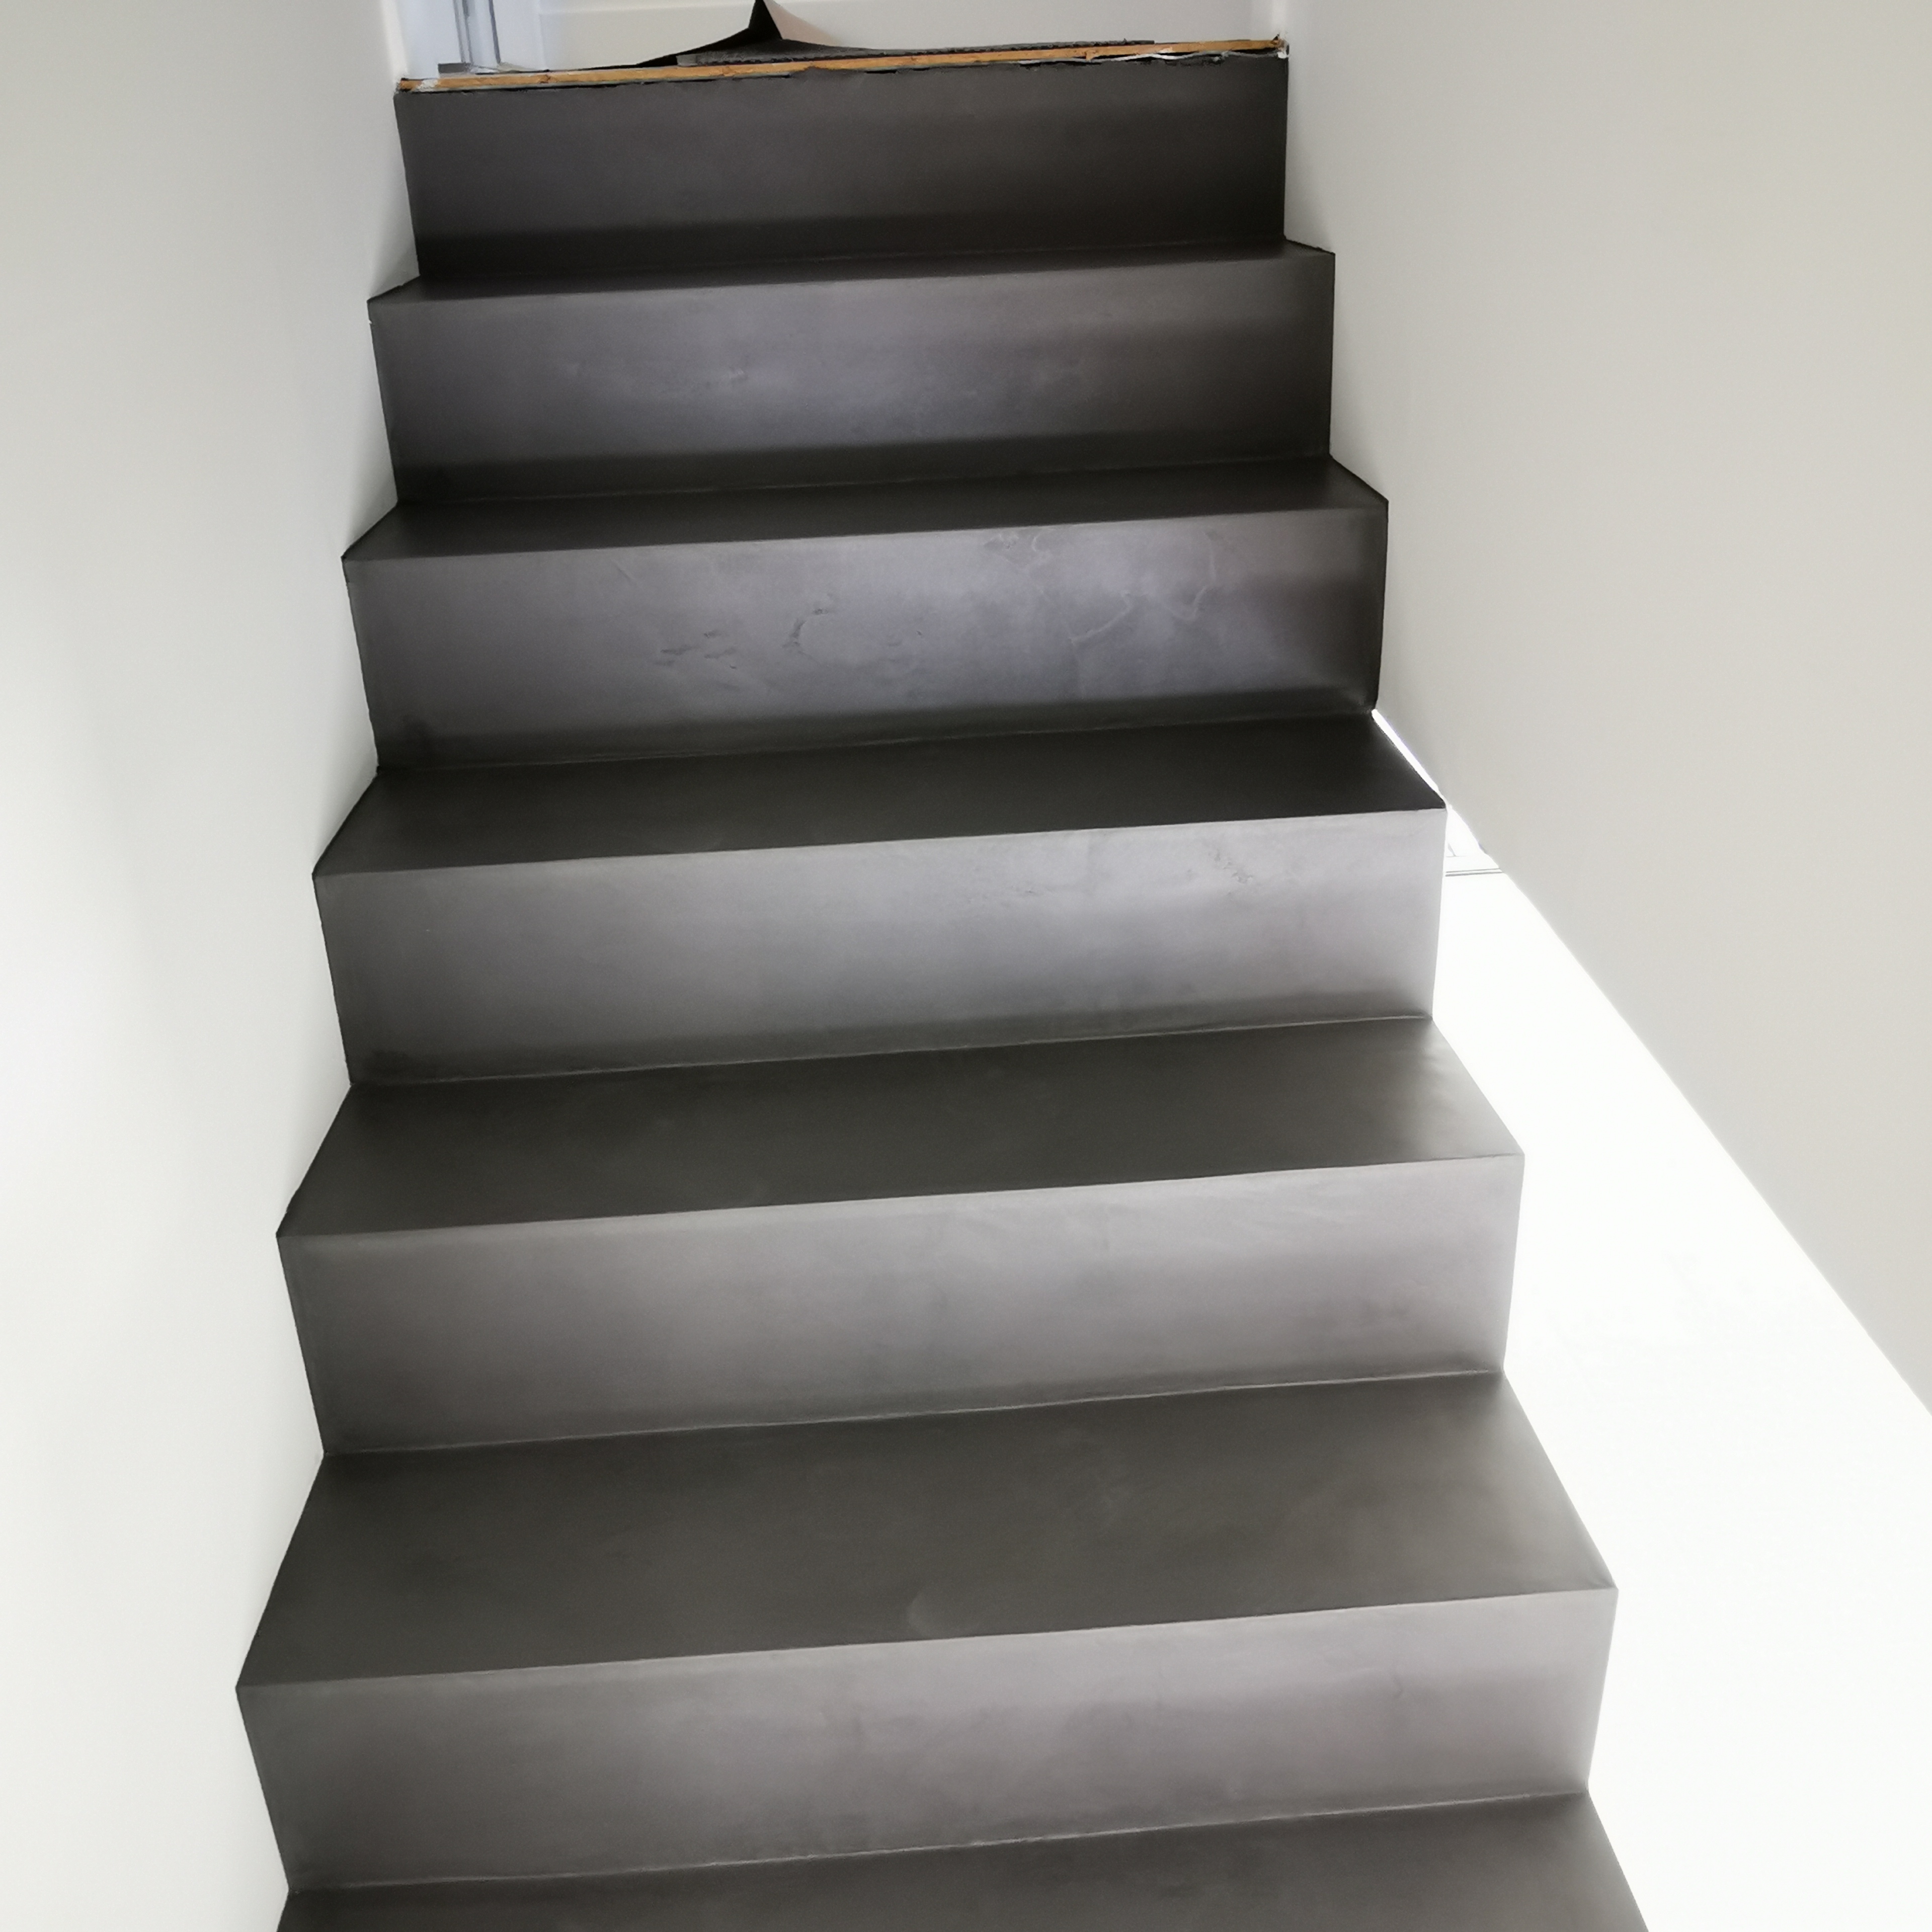 béton ciré d'un escalier béton couleur gris orbital . Réalisation à Saint-Aubin-de-Médoc proche de Bordeaux pour un particulier Yohan Salvador de scalinfinition33